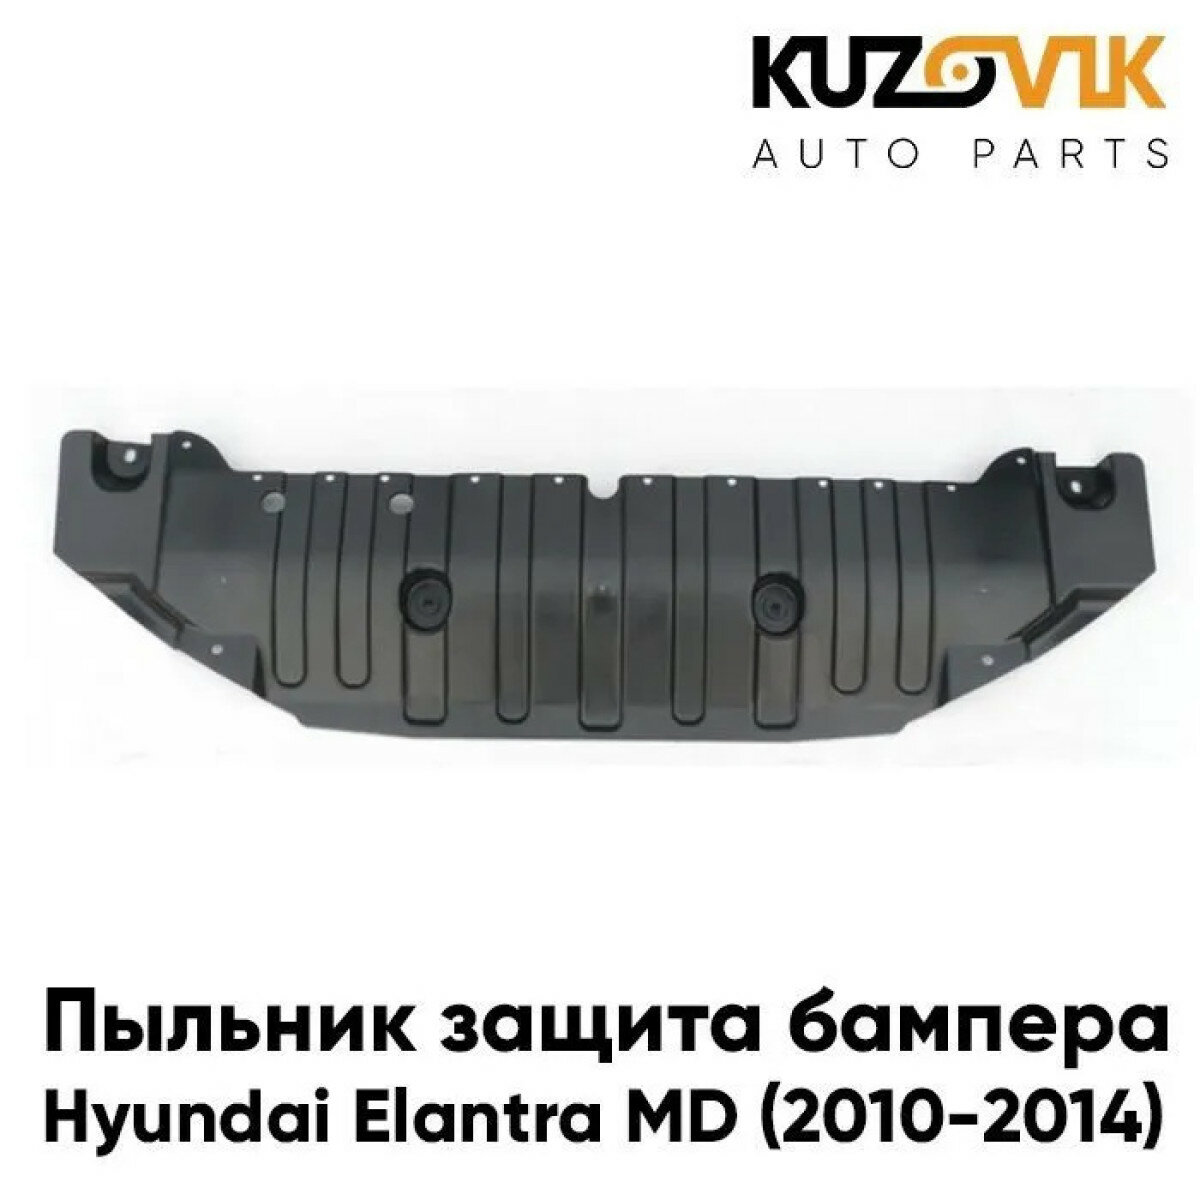 Пыльник защита бампера Hyundai Elantra MD (2010-2014) нижний центральный пластиковый